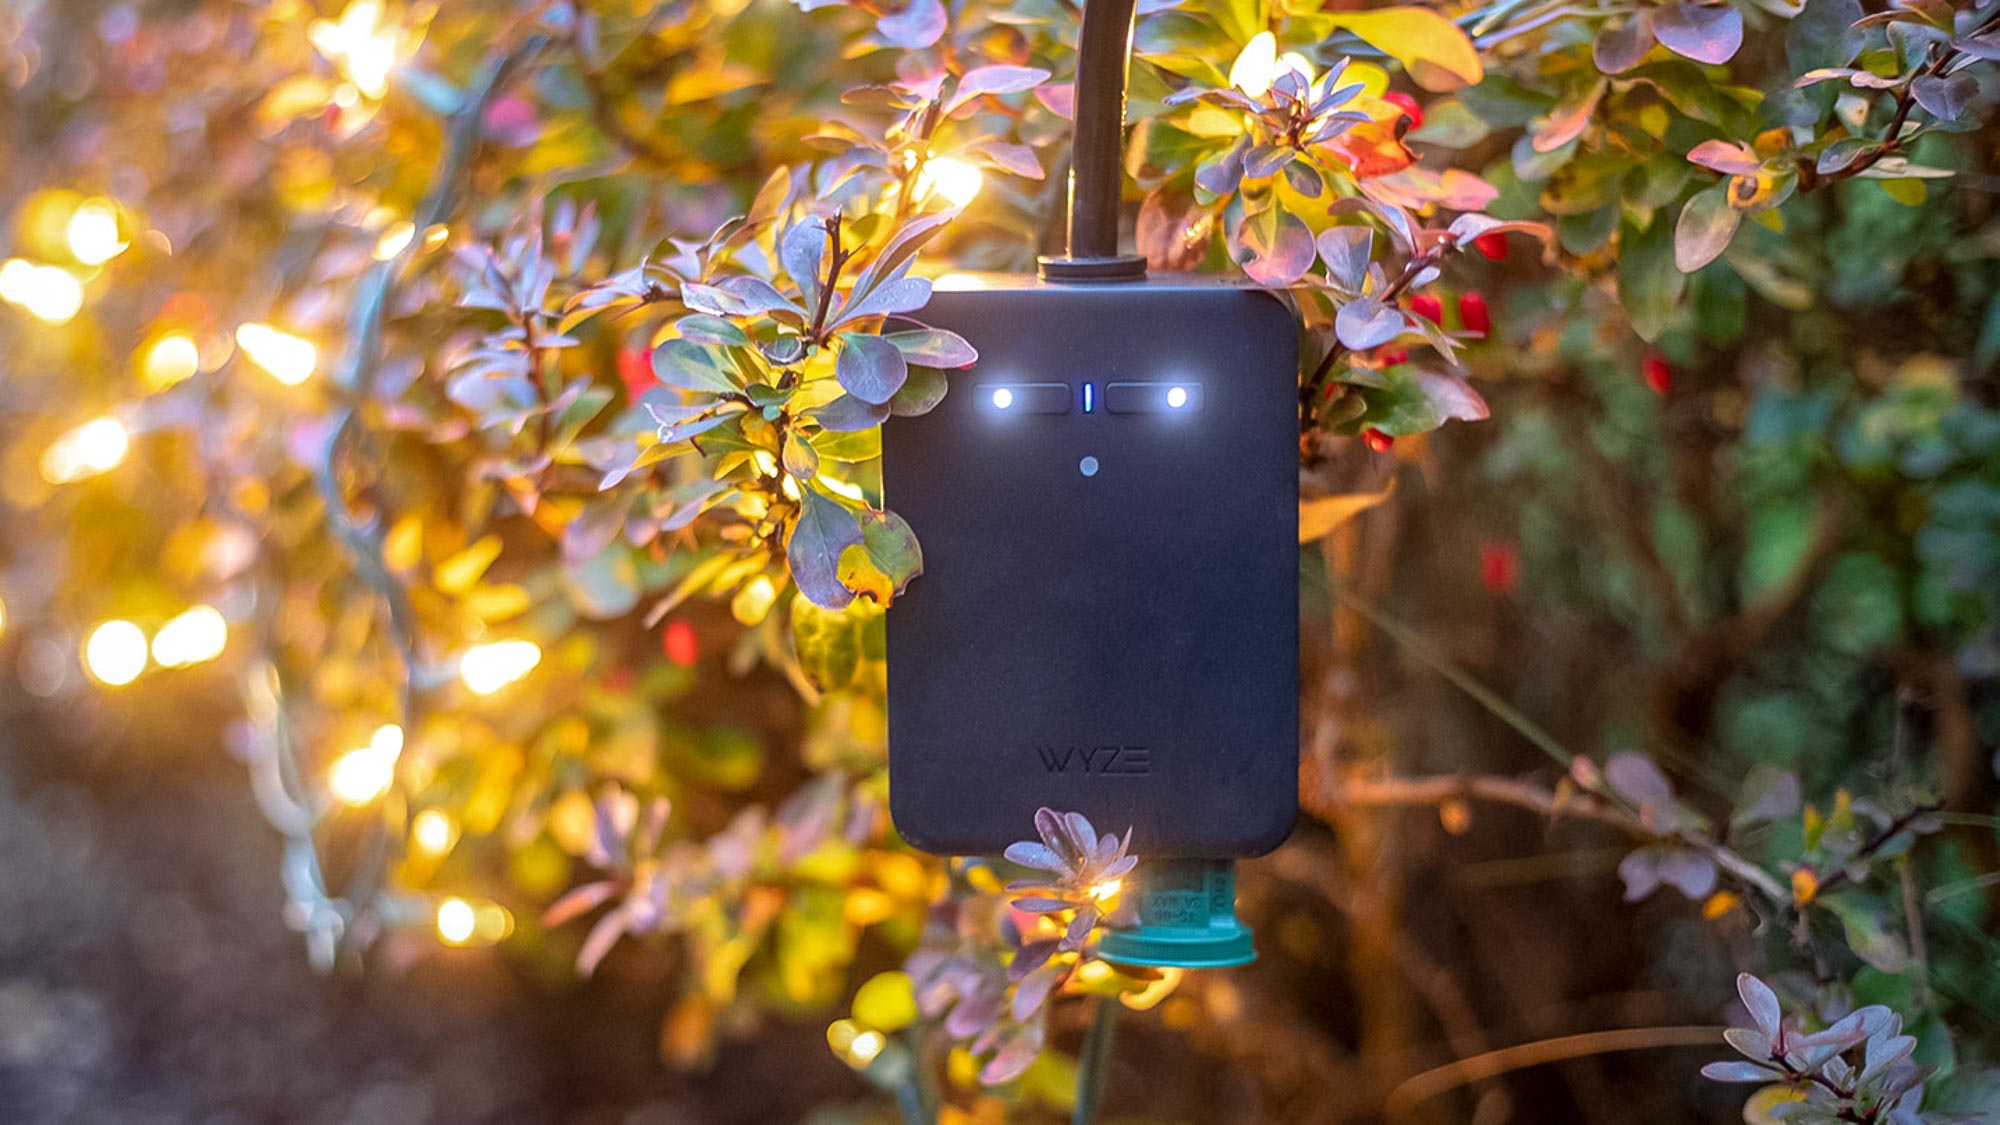 Best outdoor smart plugs in 2024